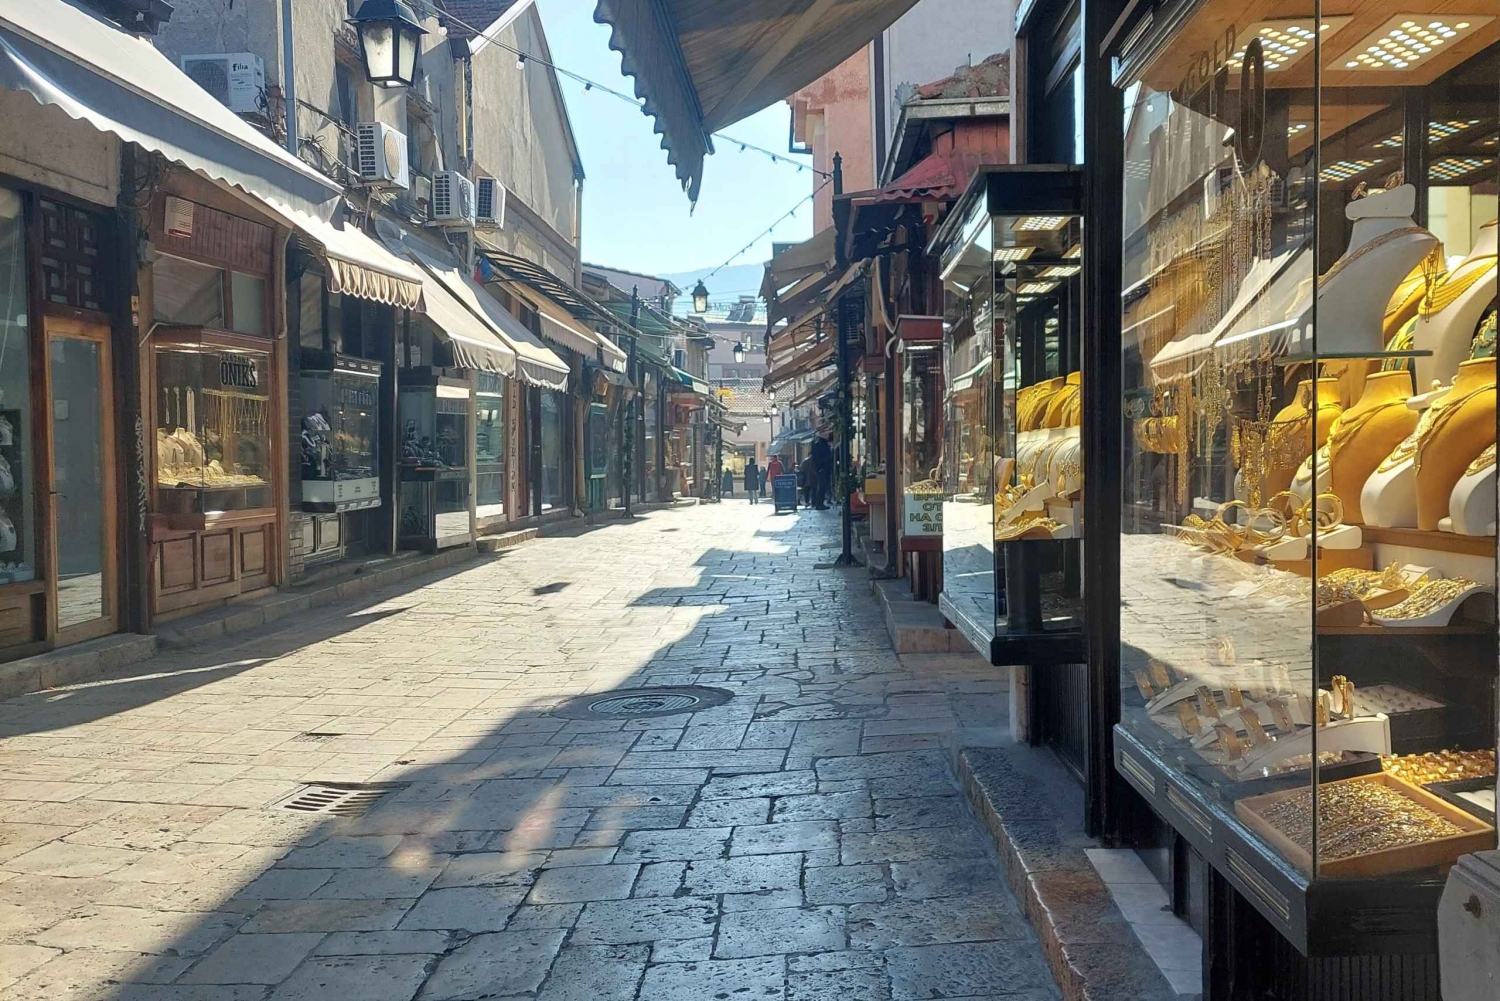 Skopje: Passeio a pé pela cidade velha e degustação de alimentos